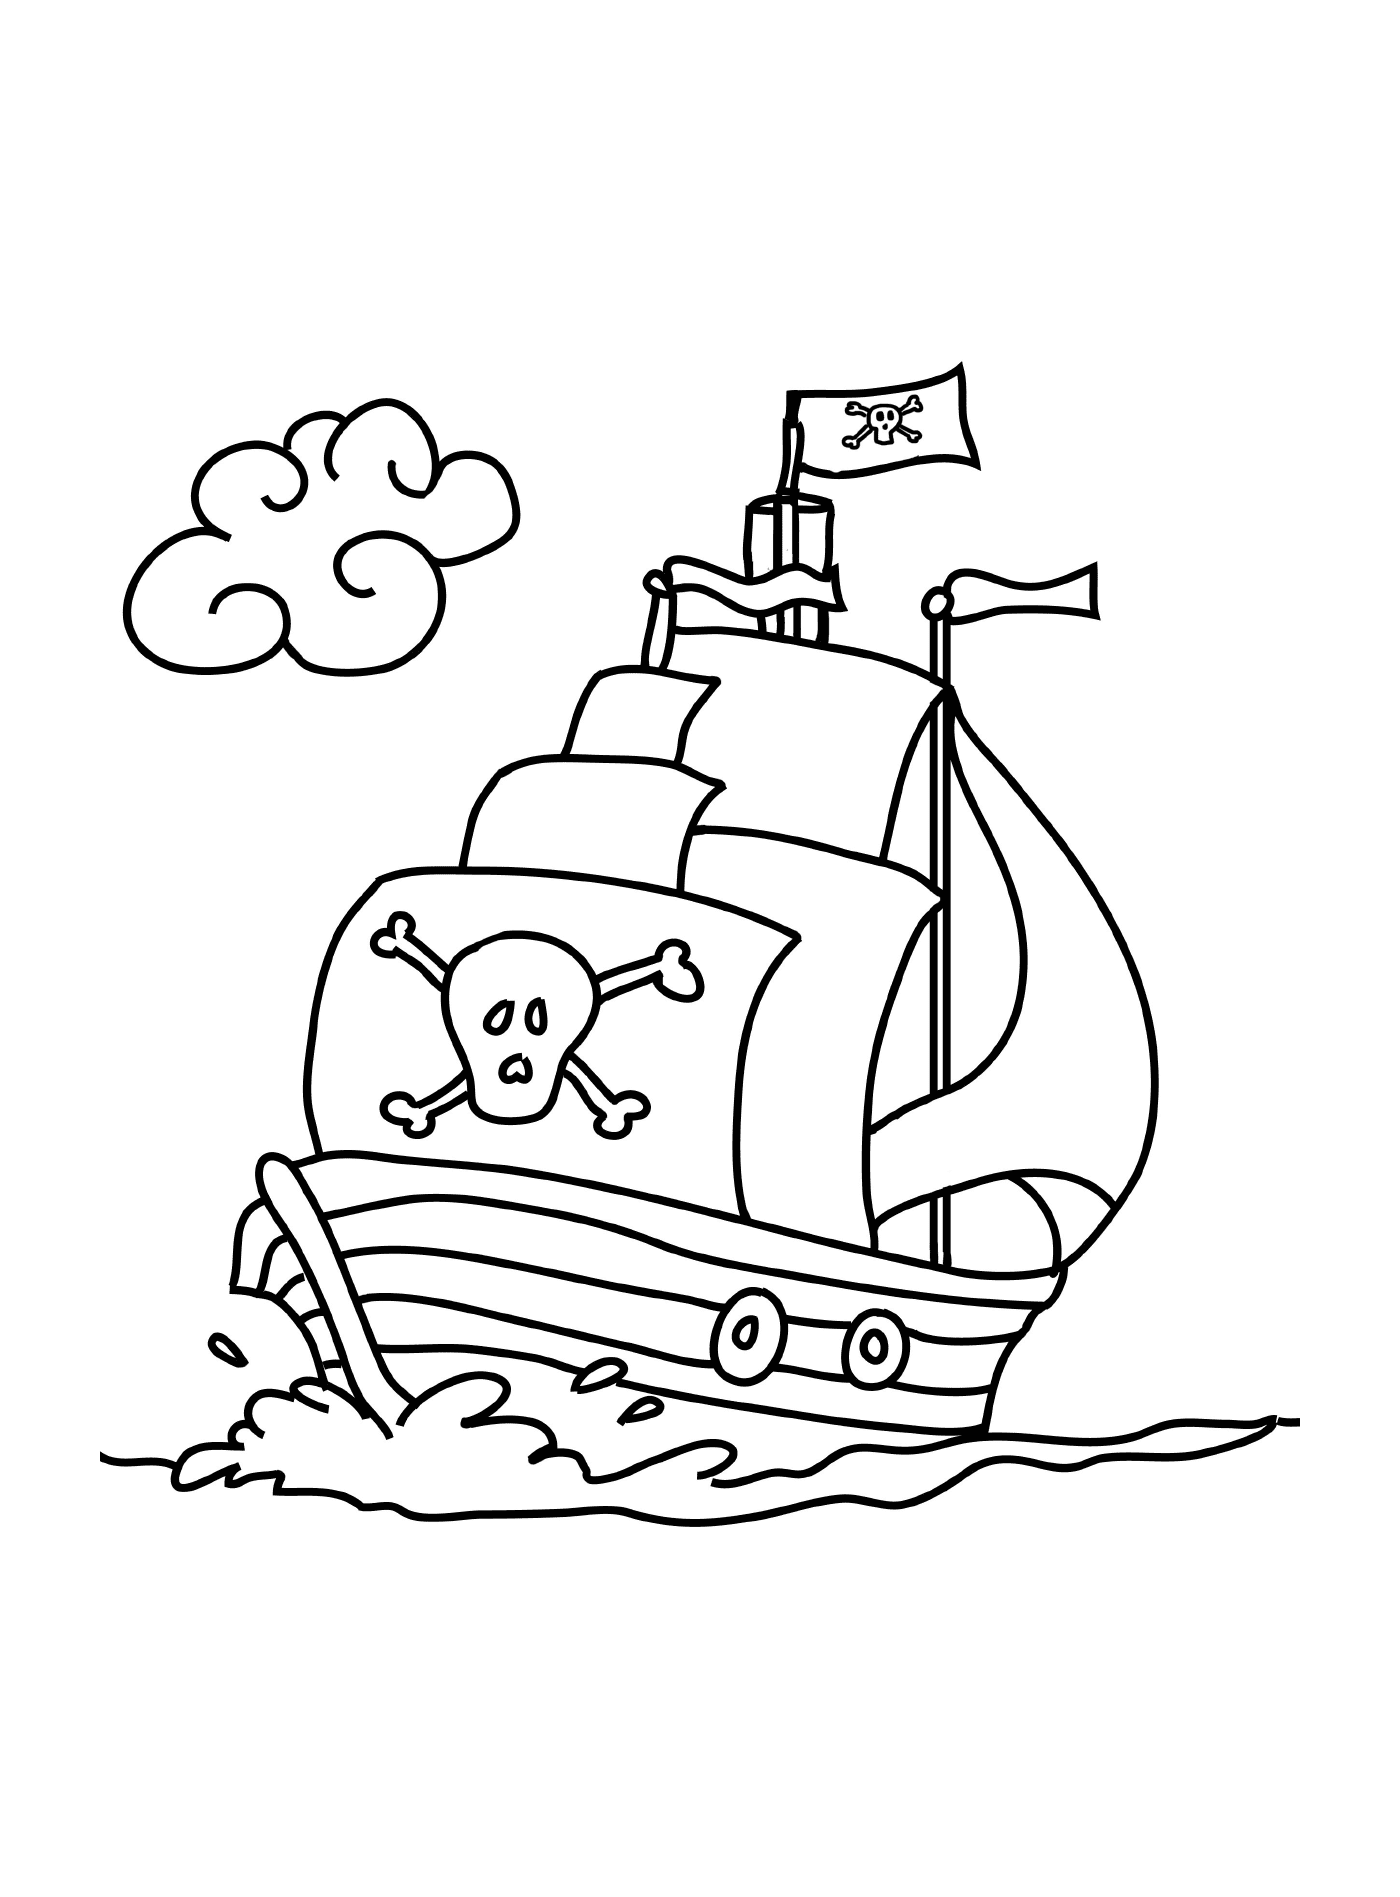  易易海盗海盗船,母船 